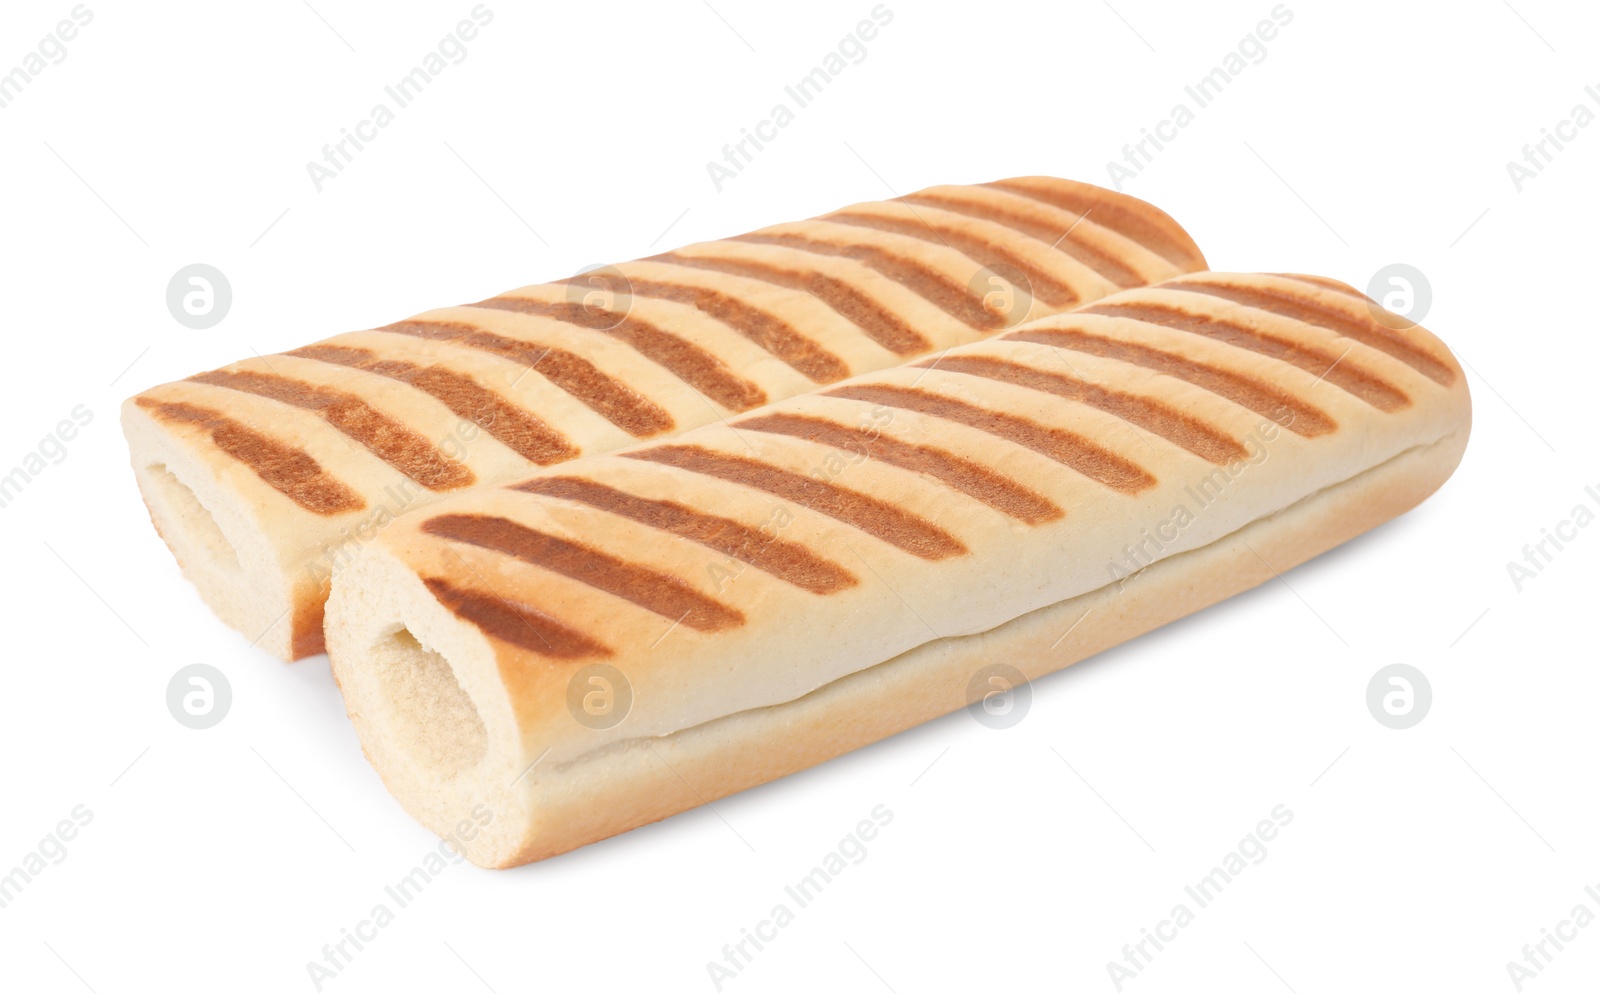 Photo of Fresh hot dog buns isolated on white